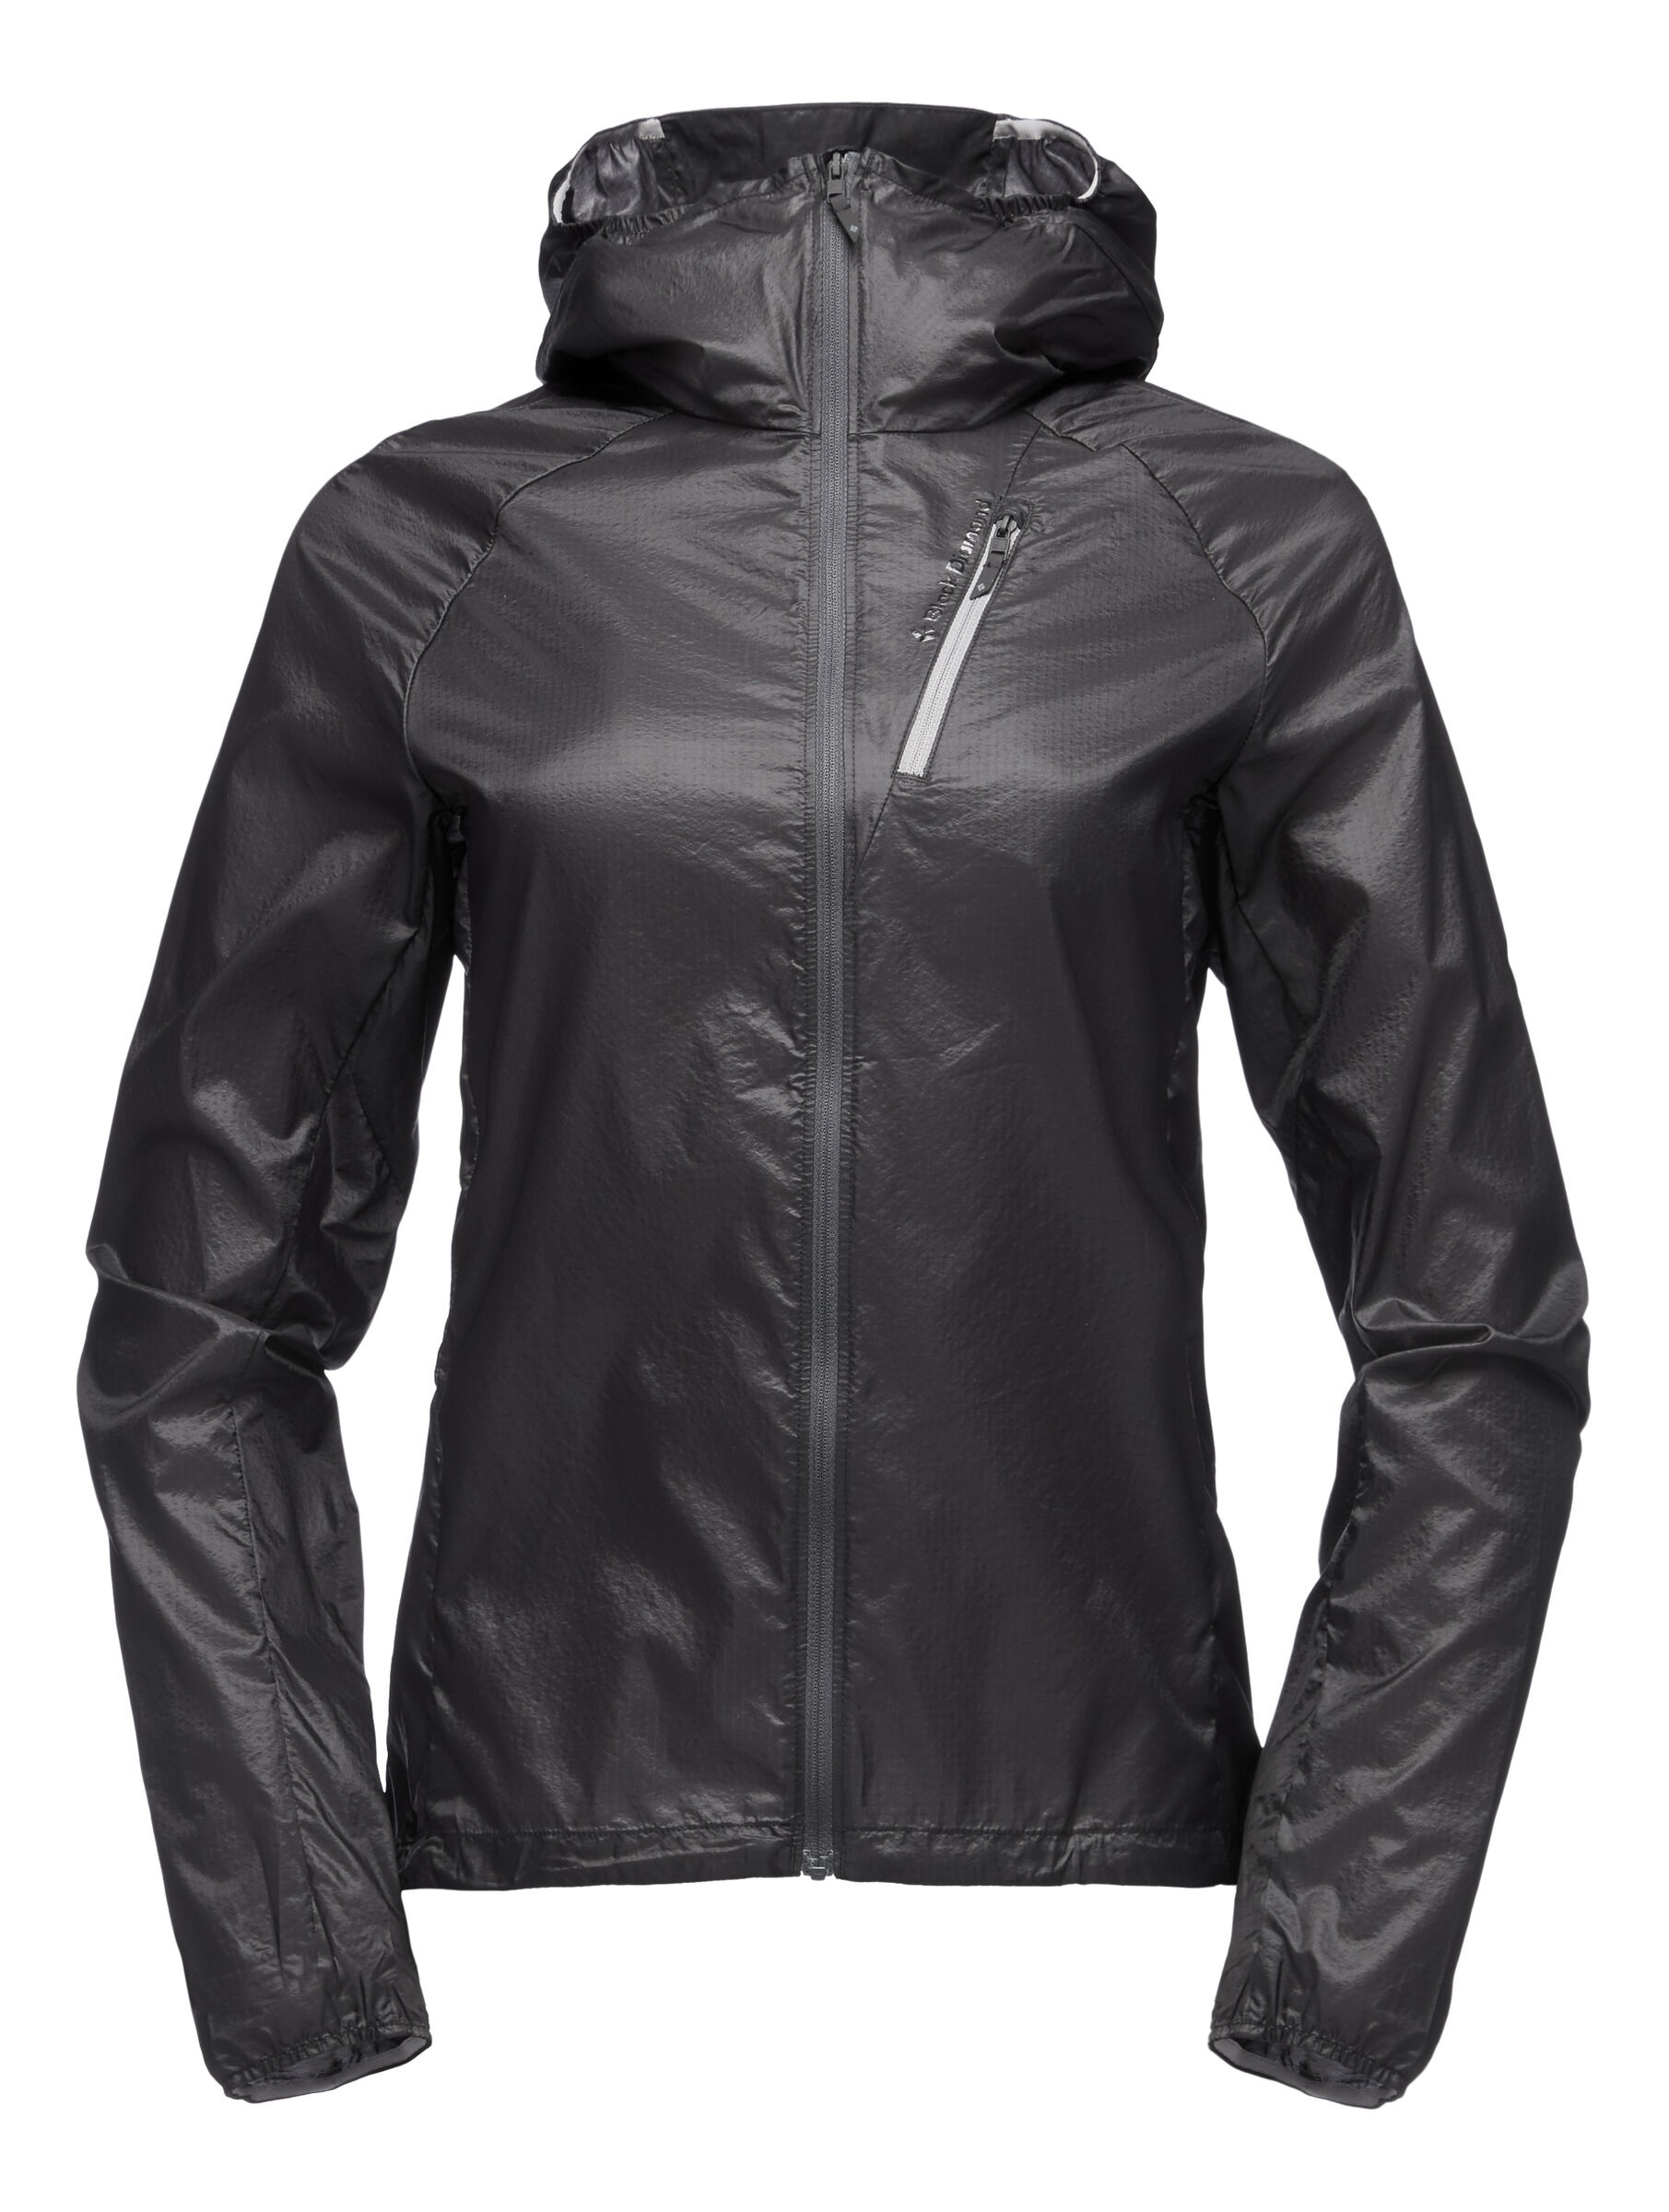 Black Diamond - Distance Wind Shell - Wind jacket - Women's